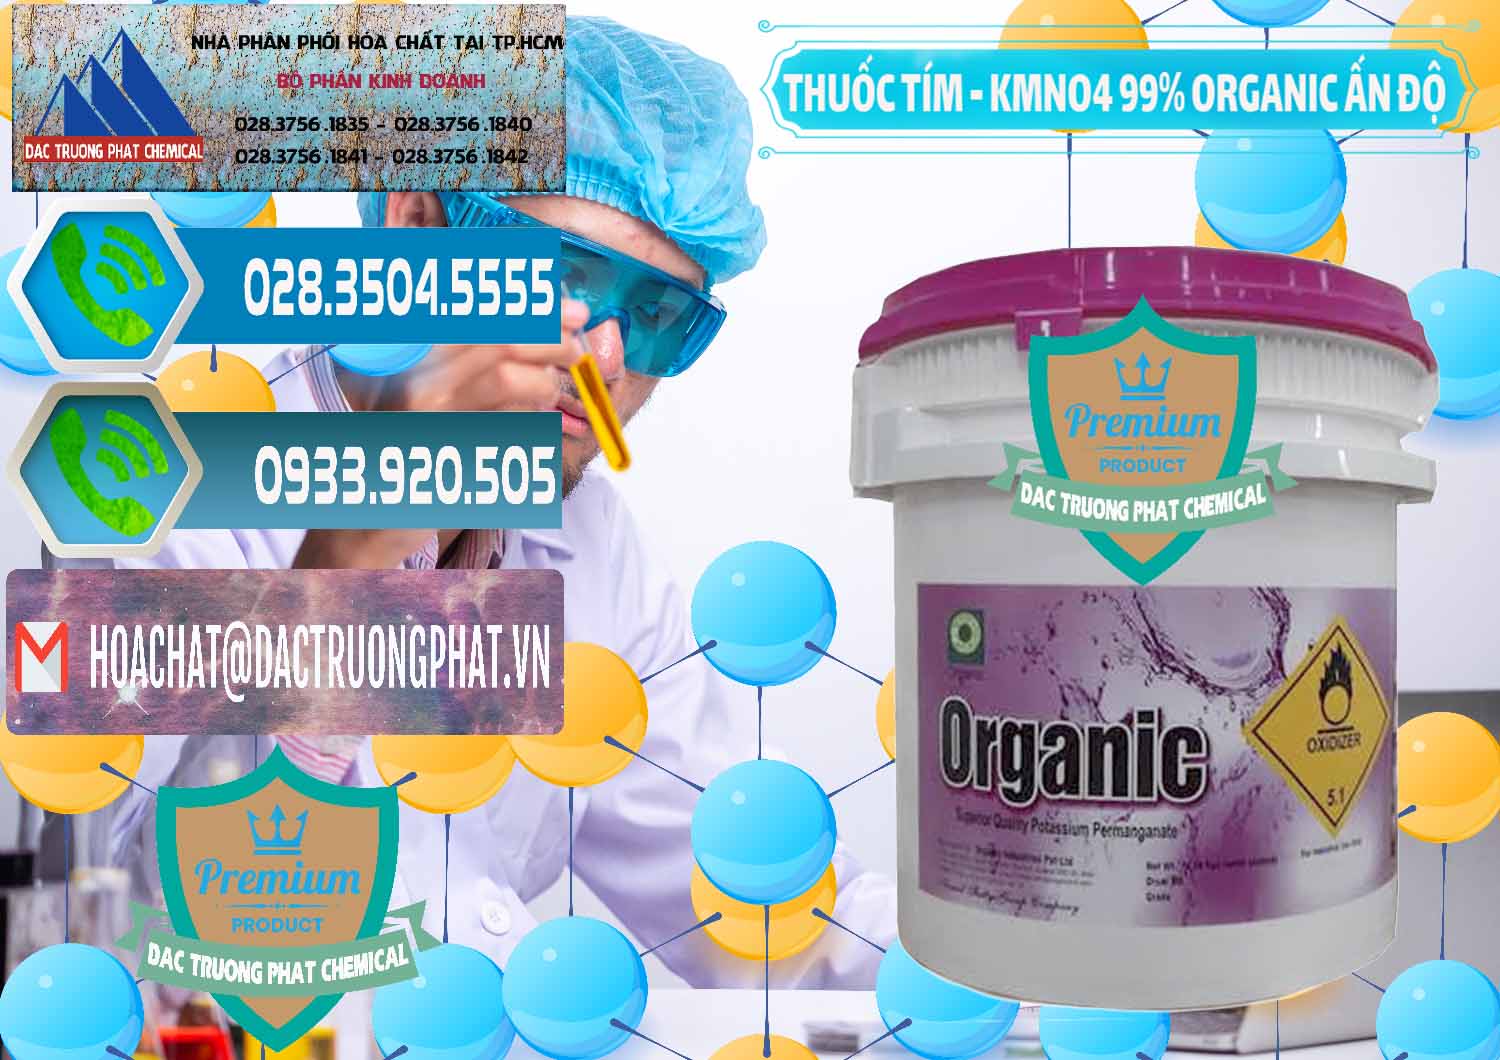 Nơi bán _ cung ứng Thuốc Tím - KMNO4 99% Organic Ấn Độ India - 0216 - Nơi chuyên cung cấp & kinh doanh hóa chất tại TP.HCM - congtyhoachat.net